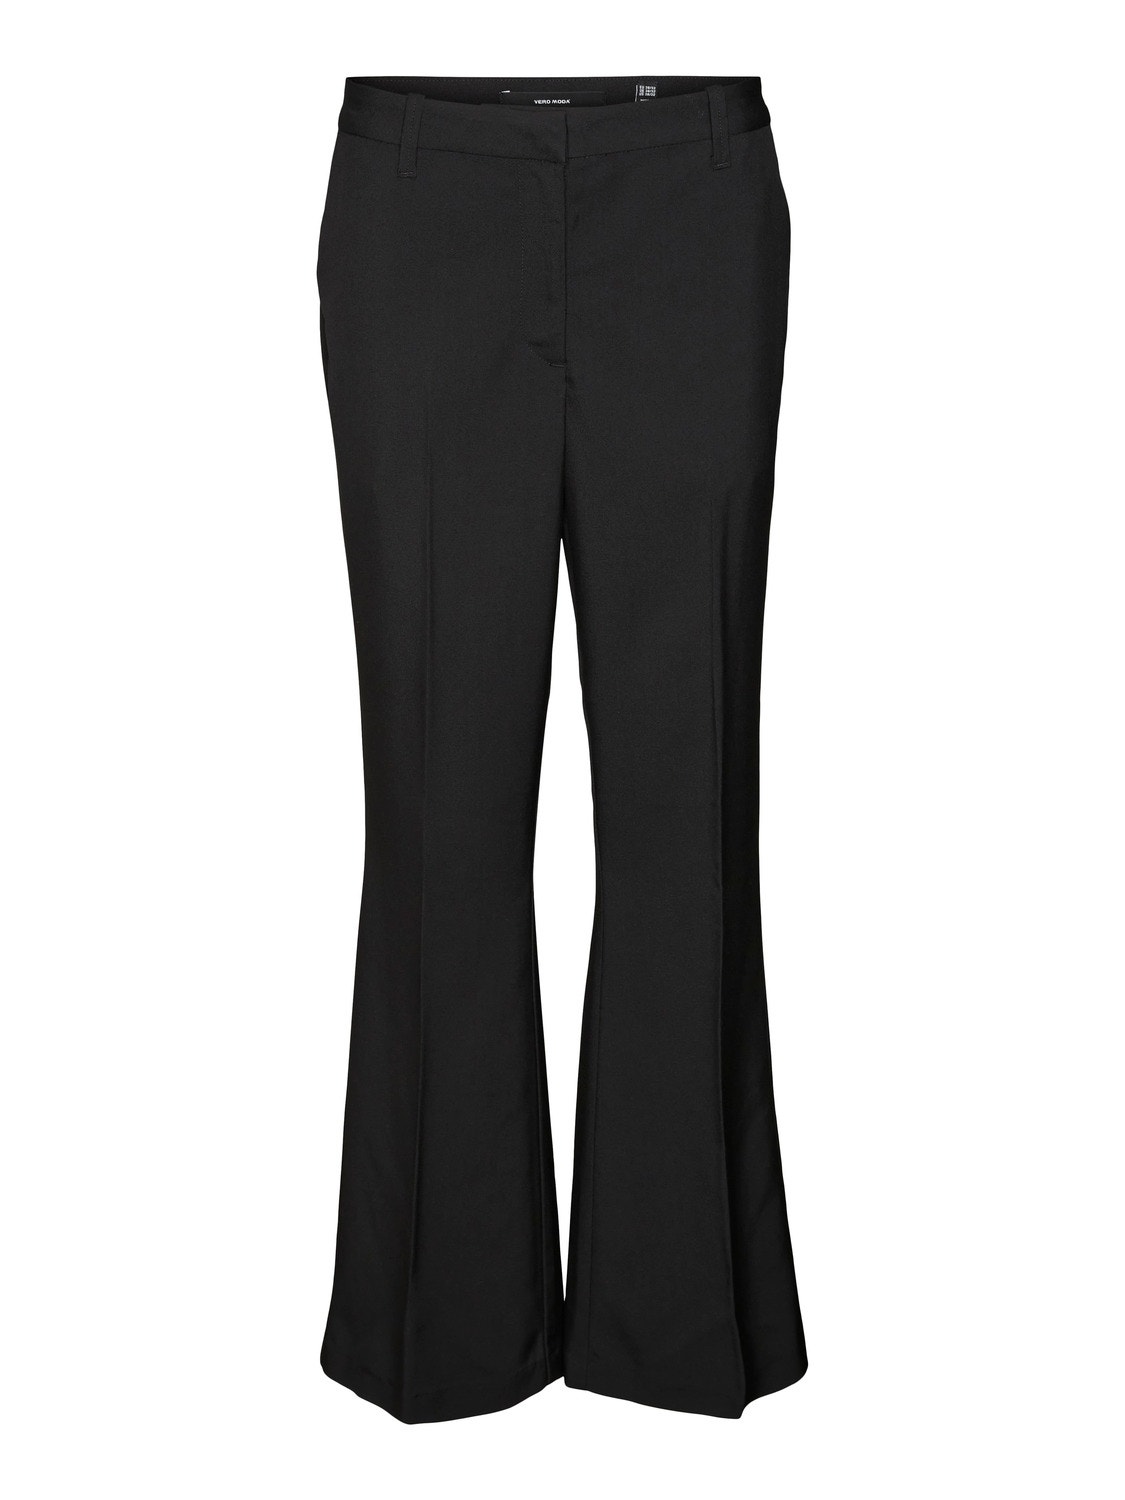 Vero Moda VMAVERY Trousers -Black - 10291892